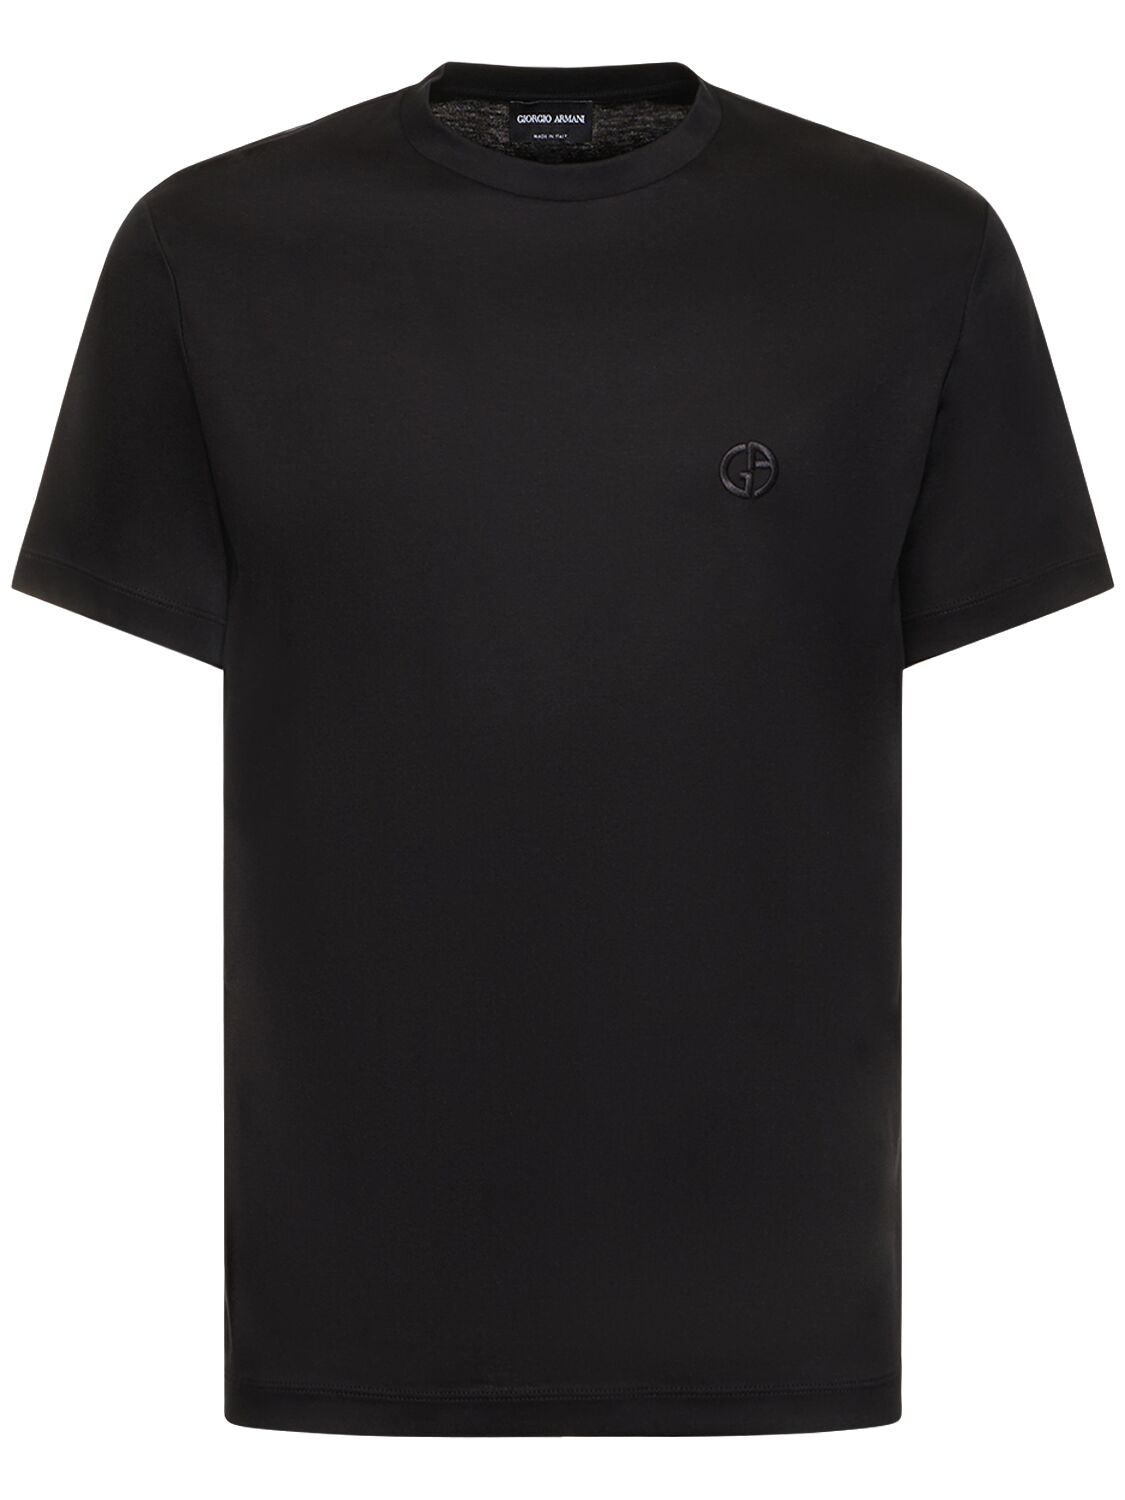 Giorgio Armani Logo Cotton T-shirt In Black